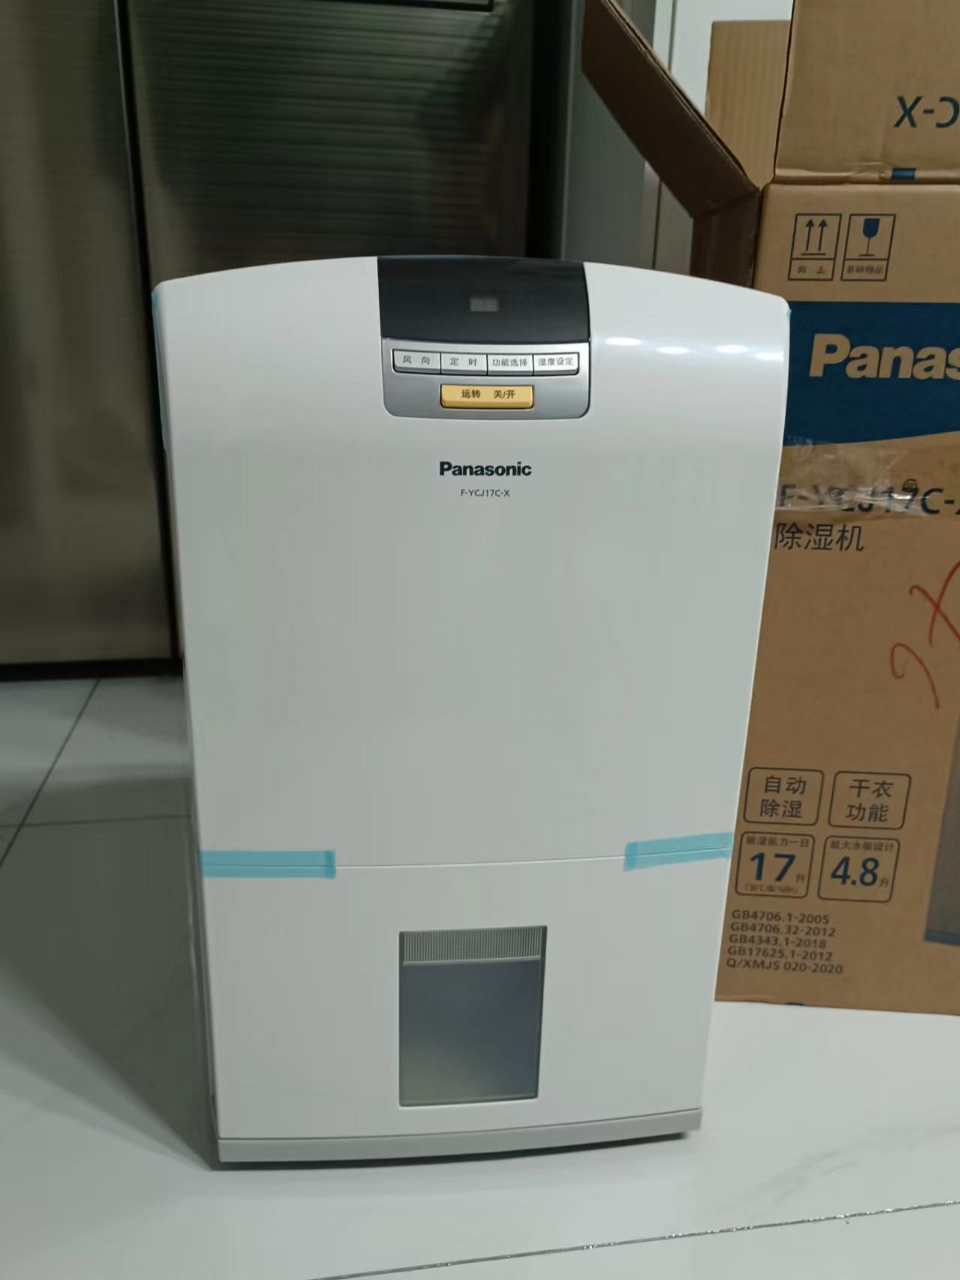 松下(Panasonic) 除湿机 F-YCJ17C白色家用低分贝低耗电吸湿除湿器 除湿干衣抽湿机适用面积41-50㎡晒单图